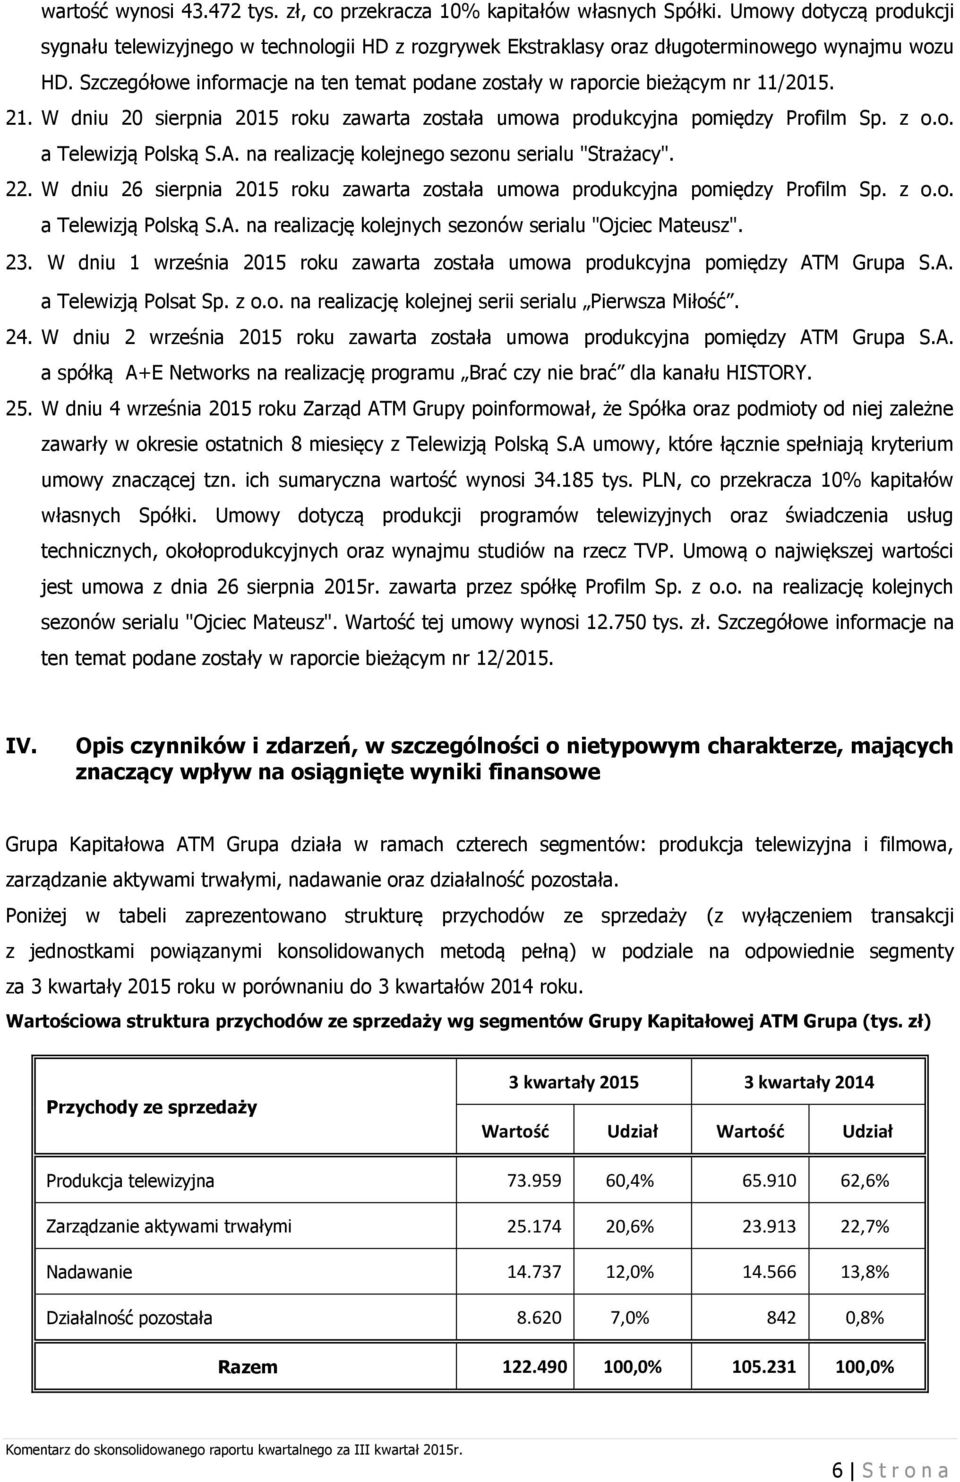 Szczegółowe informacje na ten temat podane zostały w raporcie bieżącym nr 11/2015. 21. W dniu 20 sierpnia 2015 roku zawarta została umowa produkcyjna pomiędzy Profilm Sp. z o.o. a Telewizją Polską S.